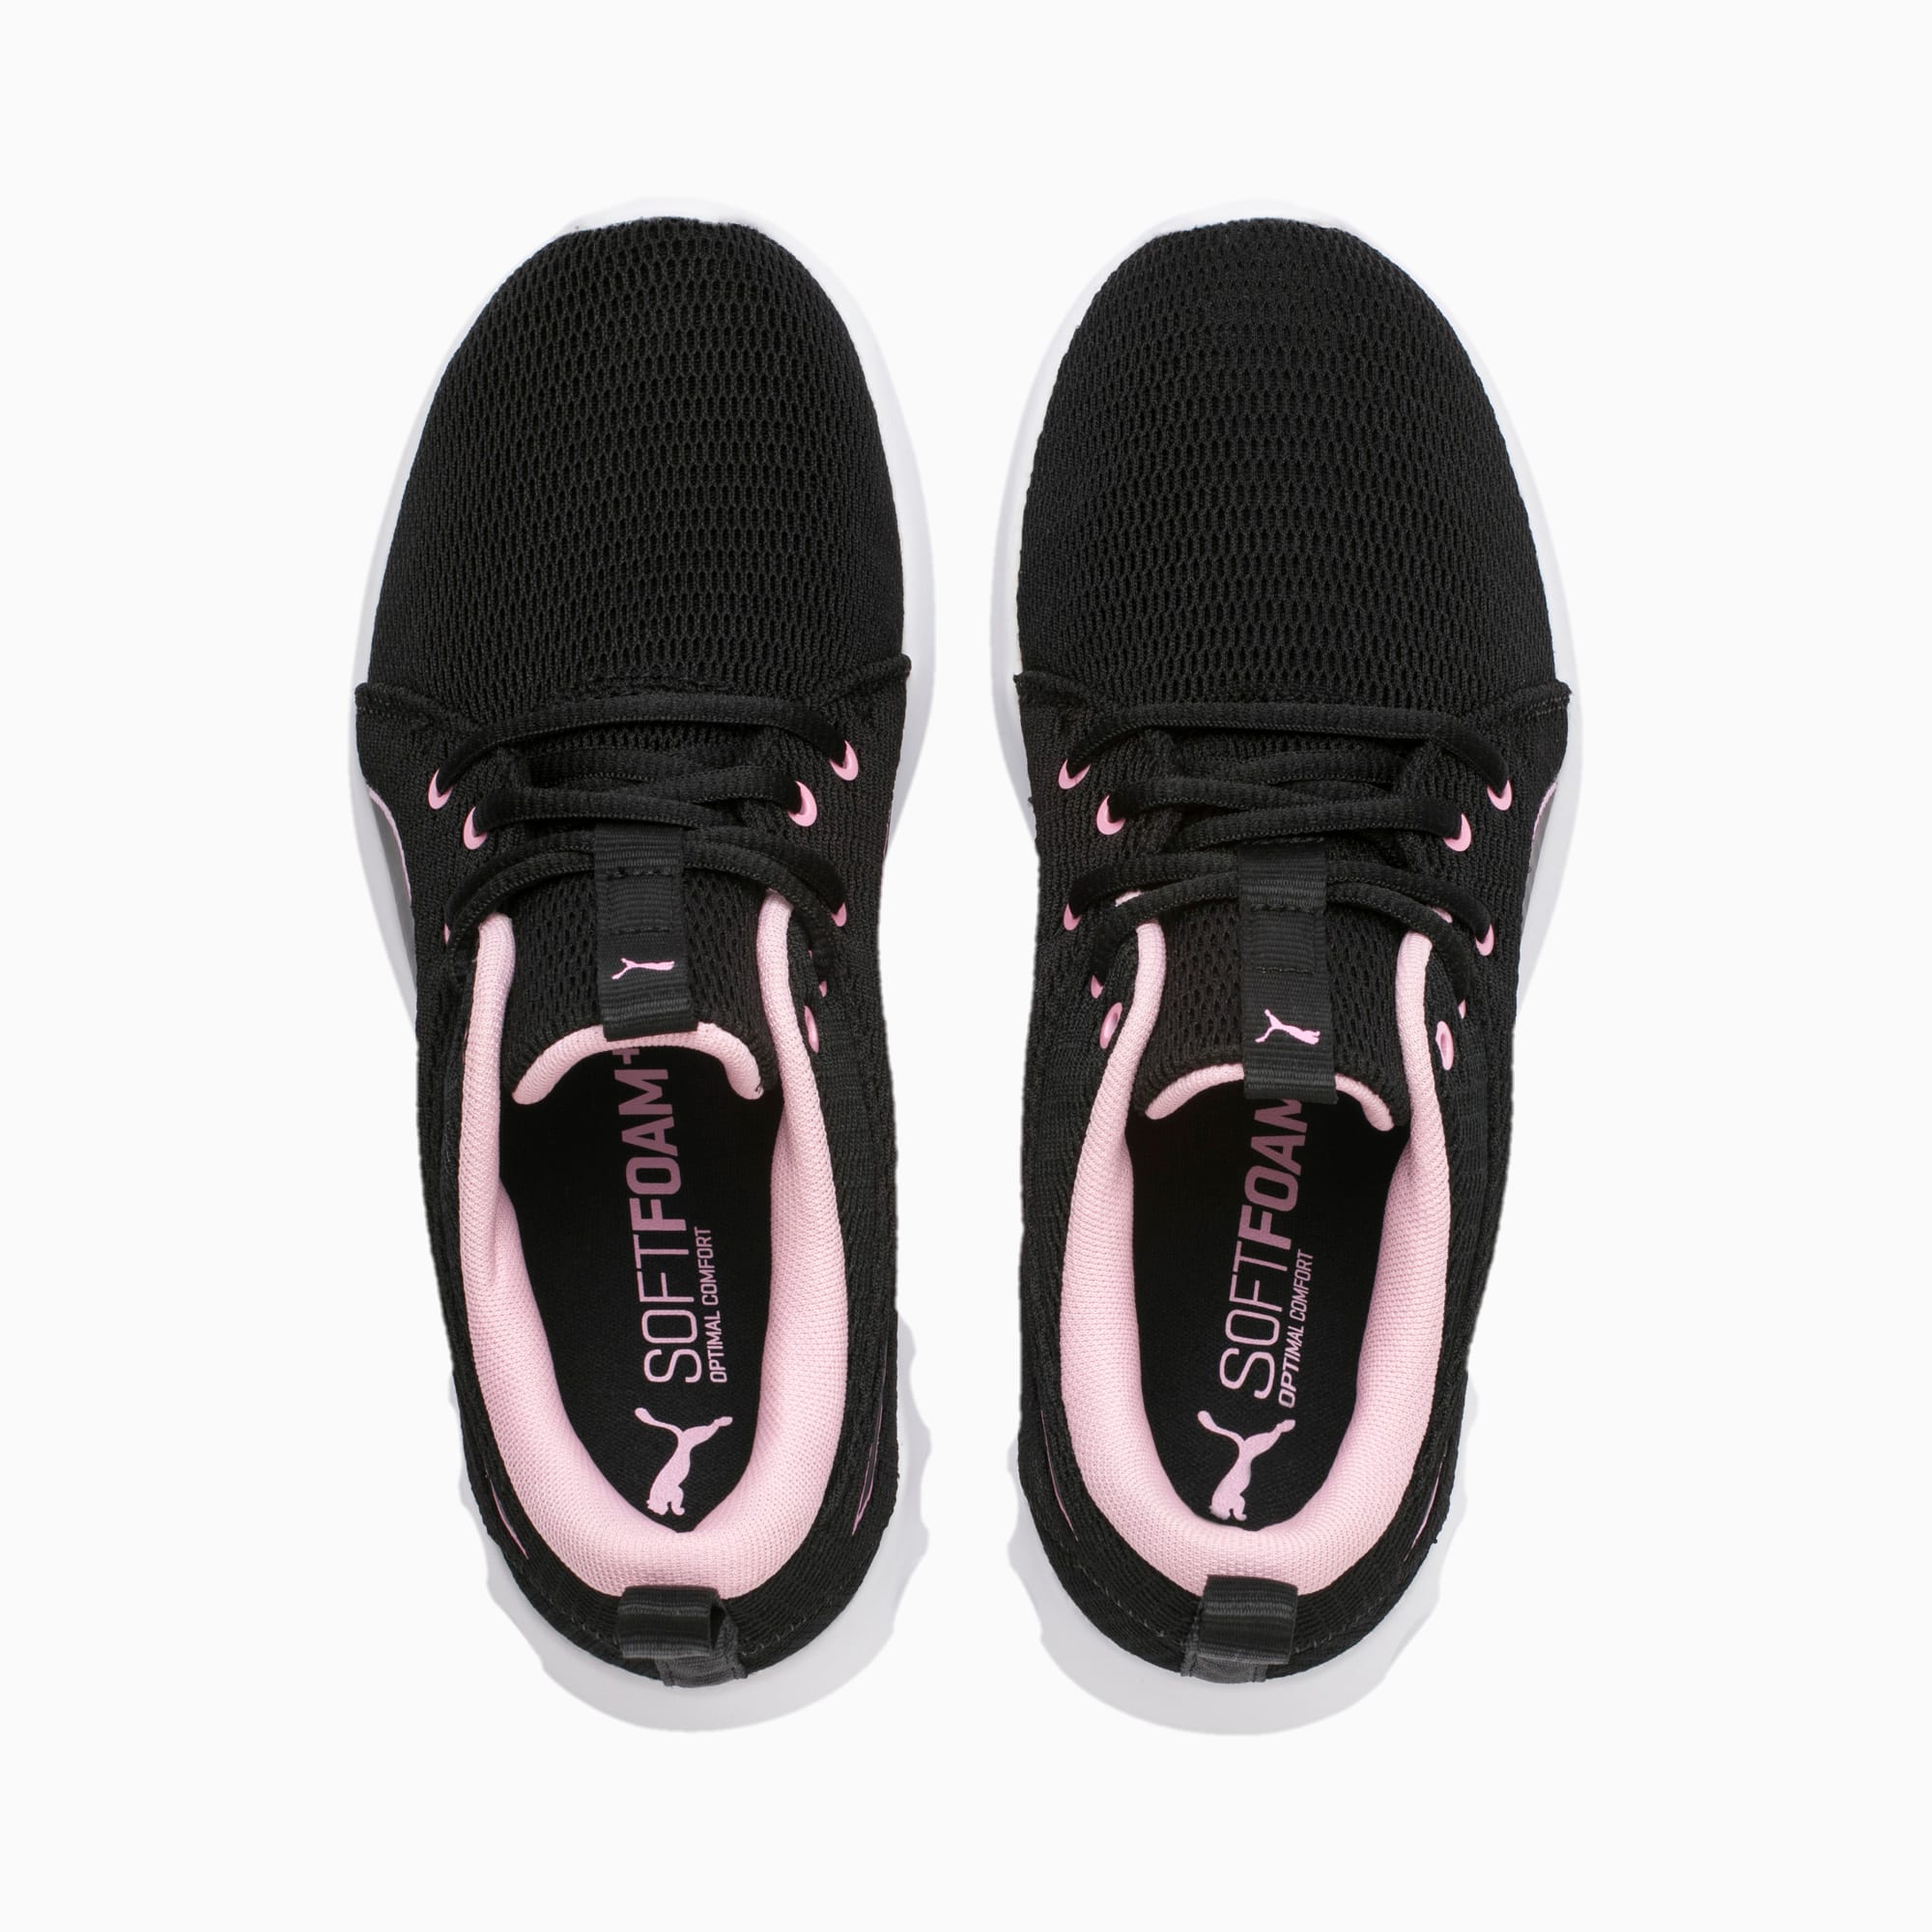 puma soft foam comfort shoes